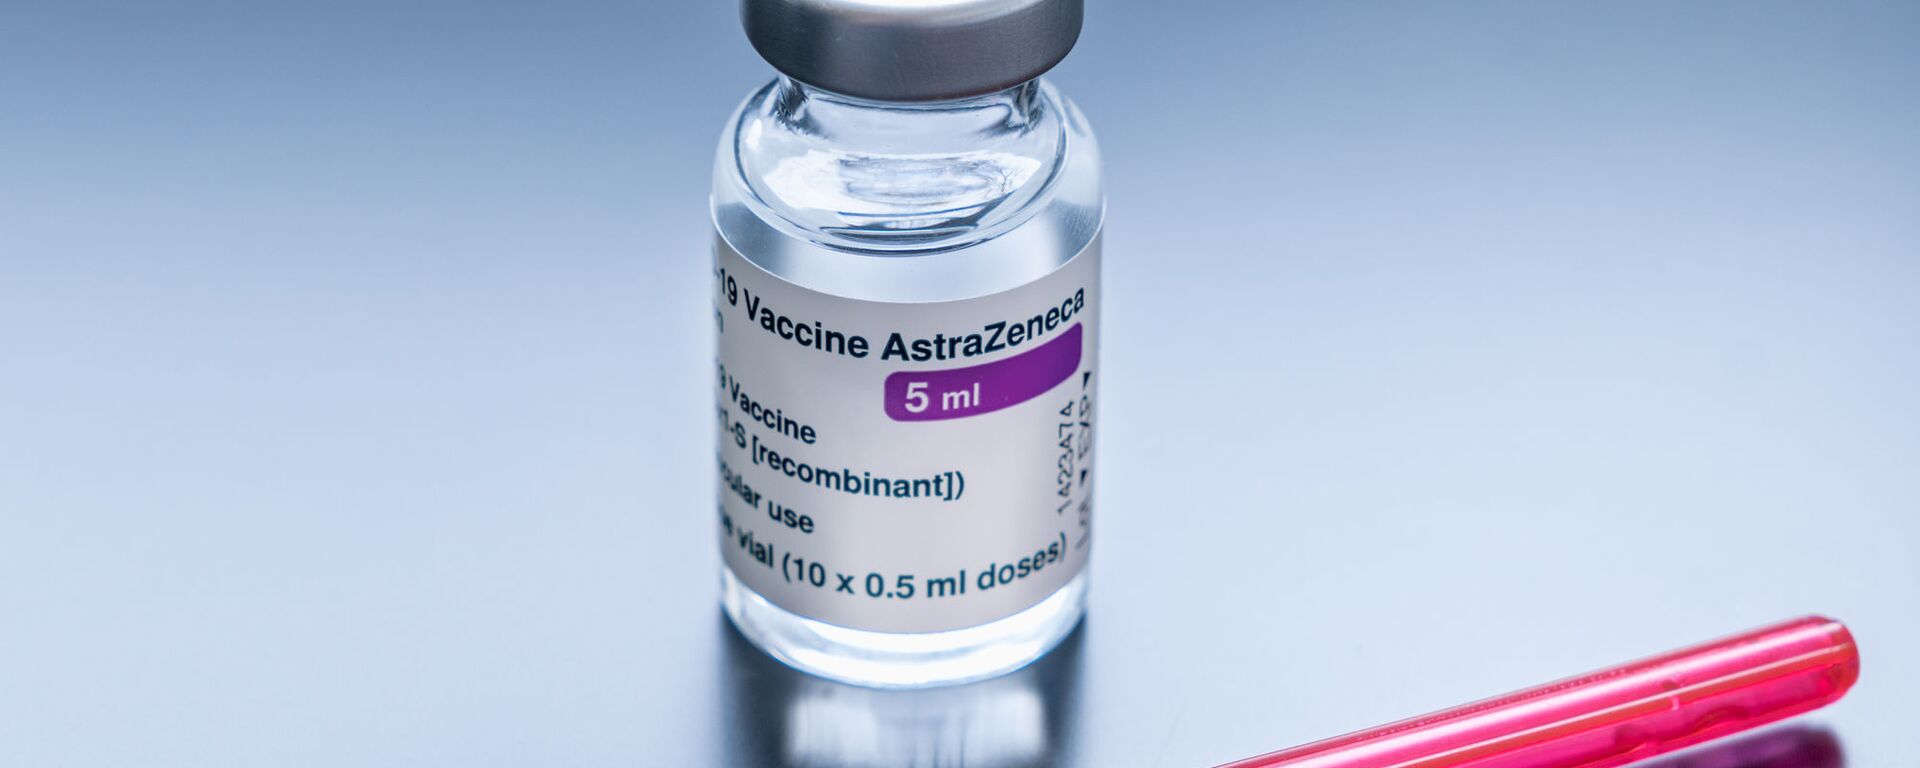 Vaccine AstraZeneca. - Sputnik Việt Nam, 1920, 10.06.2021